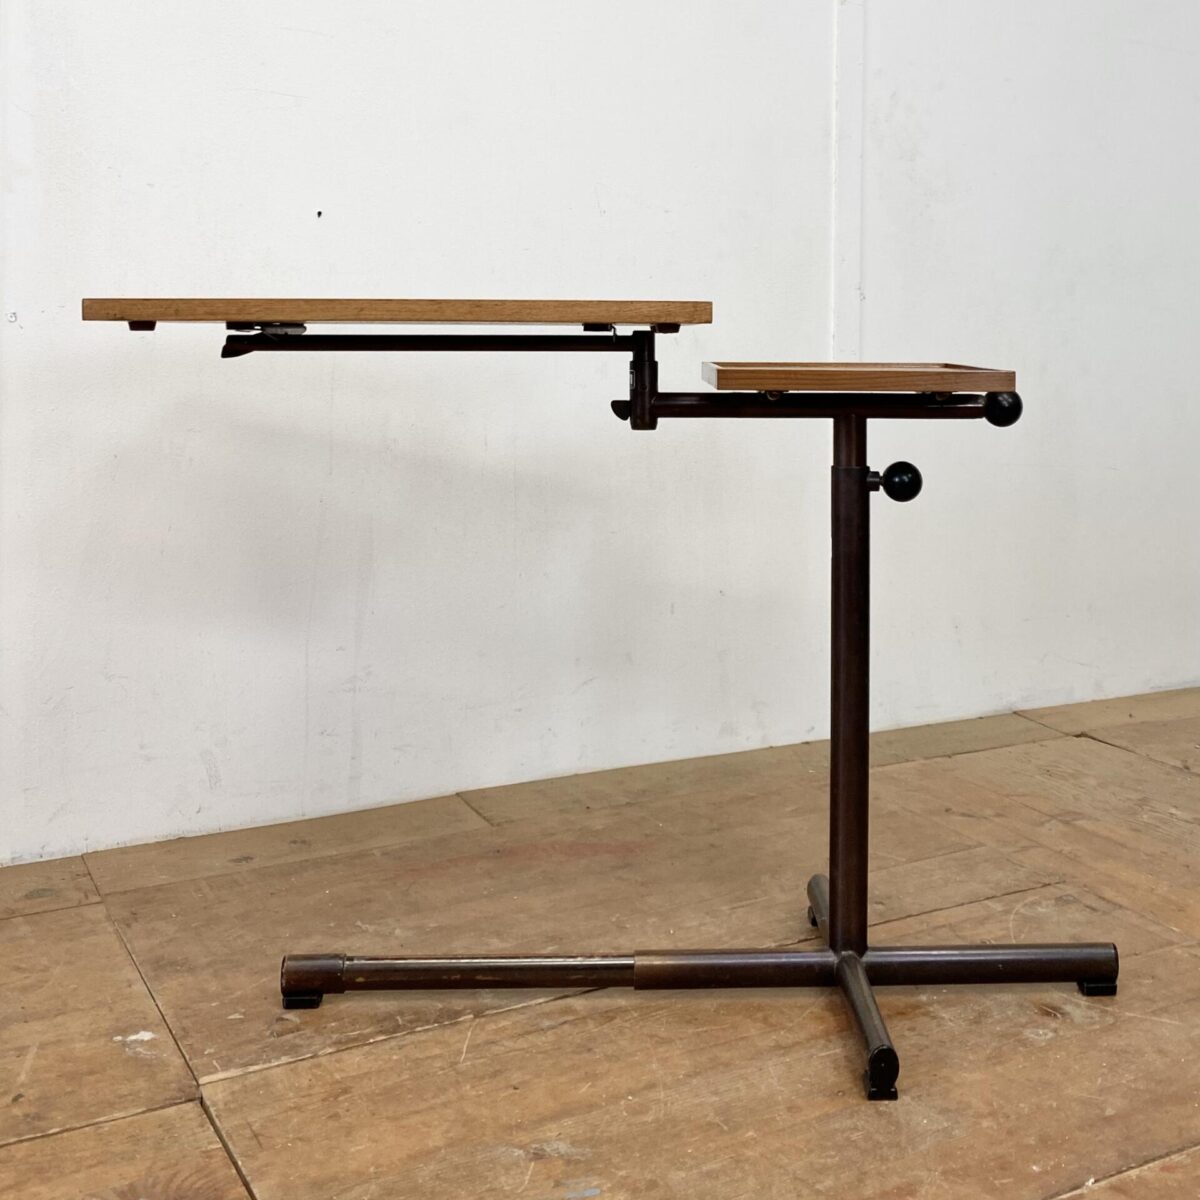 Deuxieme.shop Höhenverstellbarer Embru Tisch, von Georg Albert Ulysse Caruelle. Entwurf aus den 50er Jahren. Der Tisch ist höhenverstellbar von 70 bis 98cm. Die Hauptplatte ist Neigbar und misst 51.5x41.5cm. Das Metallgestell ist Kupferbrüniert, der eine fuss ist ausziehbar. Der Tisch kann vielseitig eingesetzt werden, als Betttisch, Sofa Beistelltisch, Notenständer oder als kleiner Arbeitstisch.